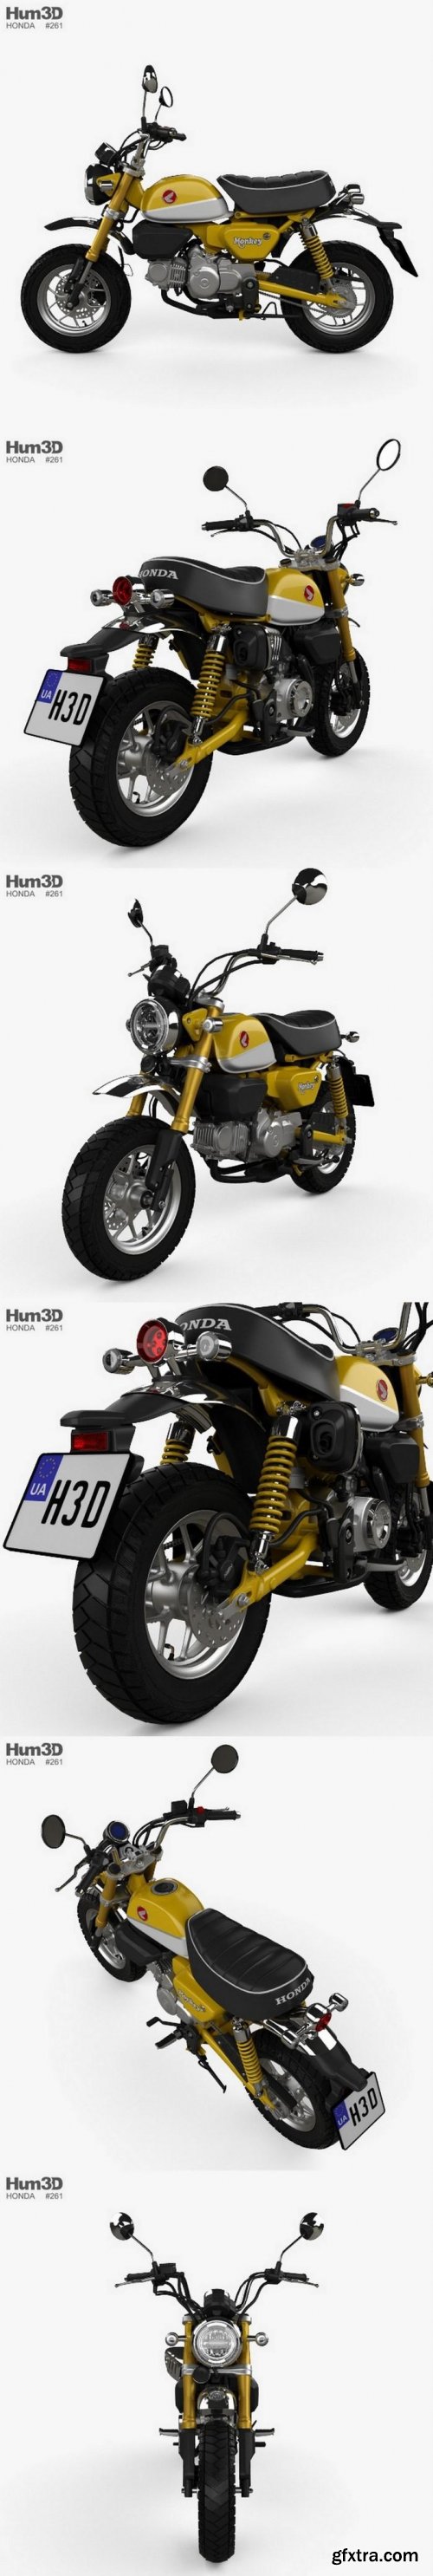 Honda Monkey 125 2019 3D Model